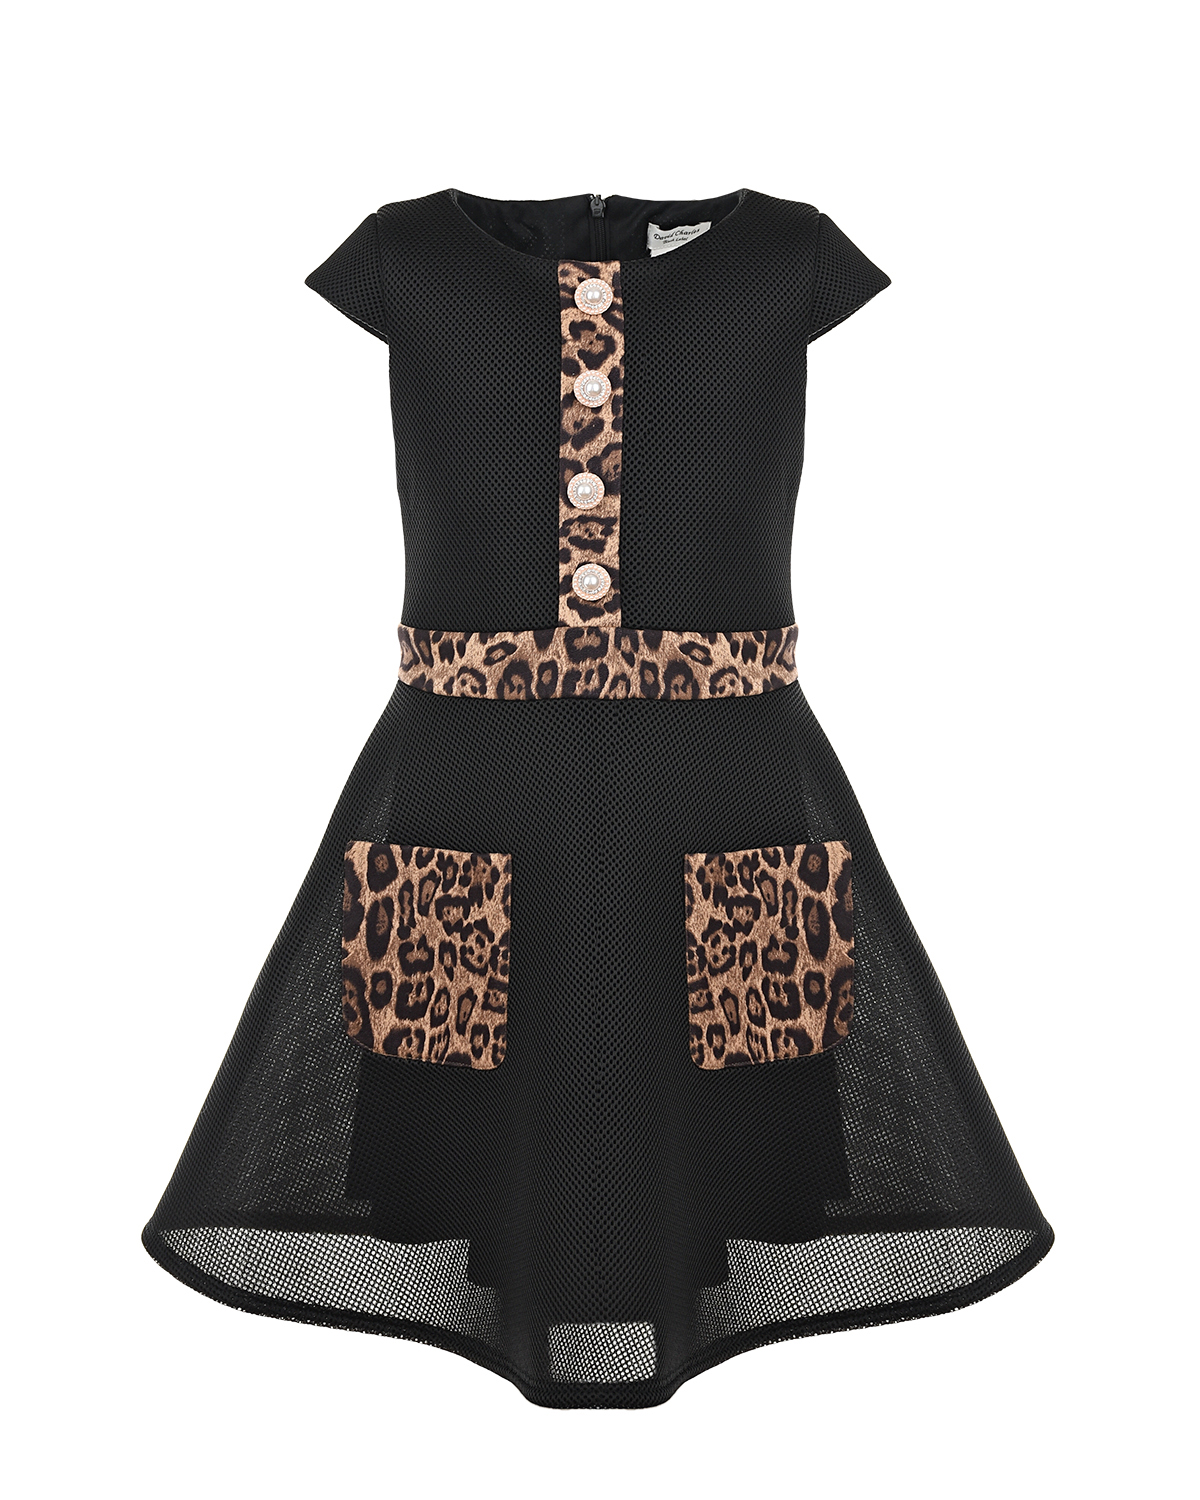 Платье с лерпардовыми вставками David Charles детское, размер 128, цвет черный - фото 1